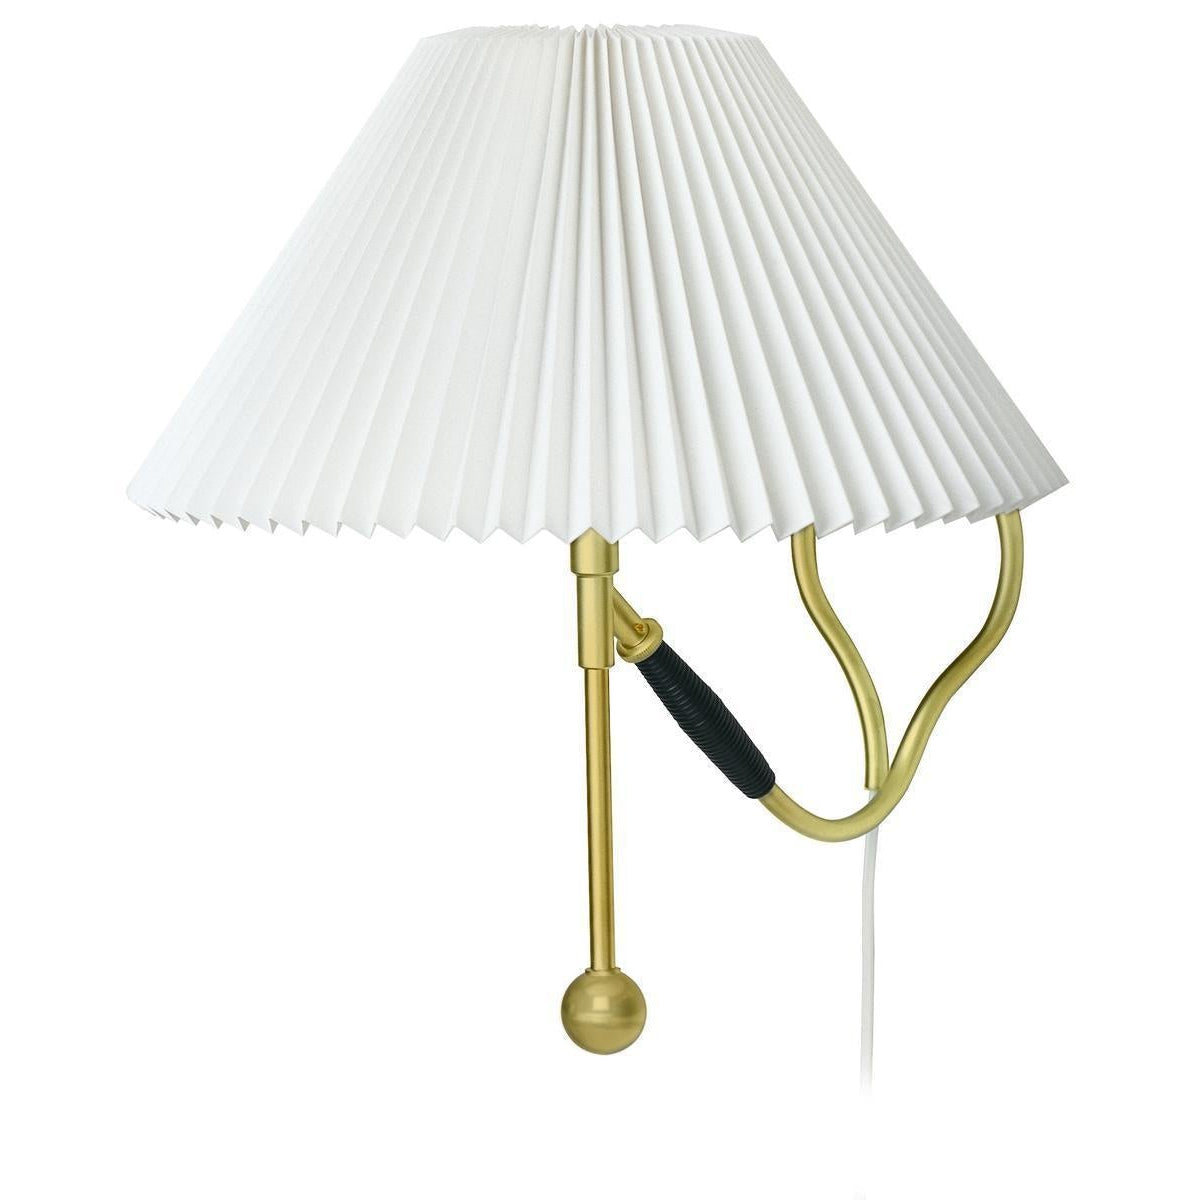 Le Klint Table / SAX MUR LAMPE 306 LASS, PAPIER